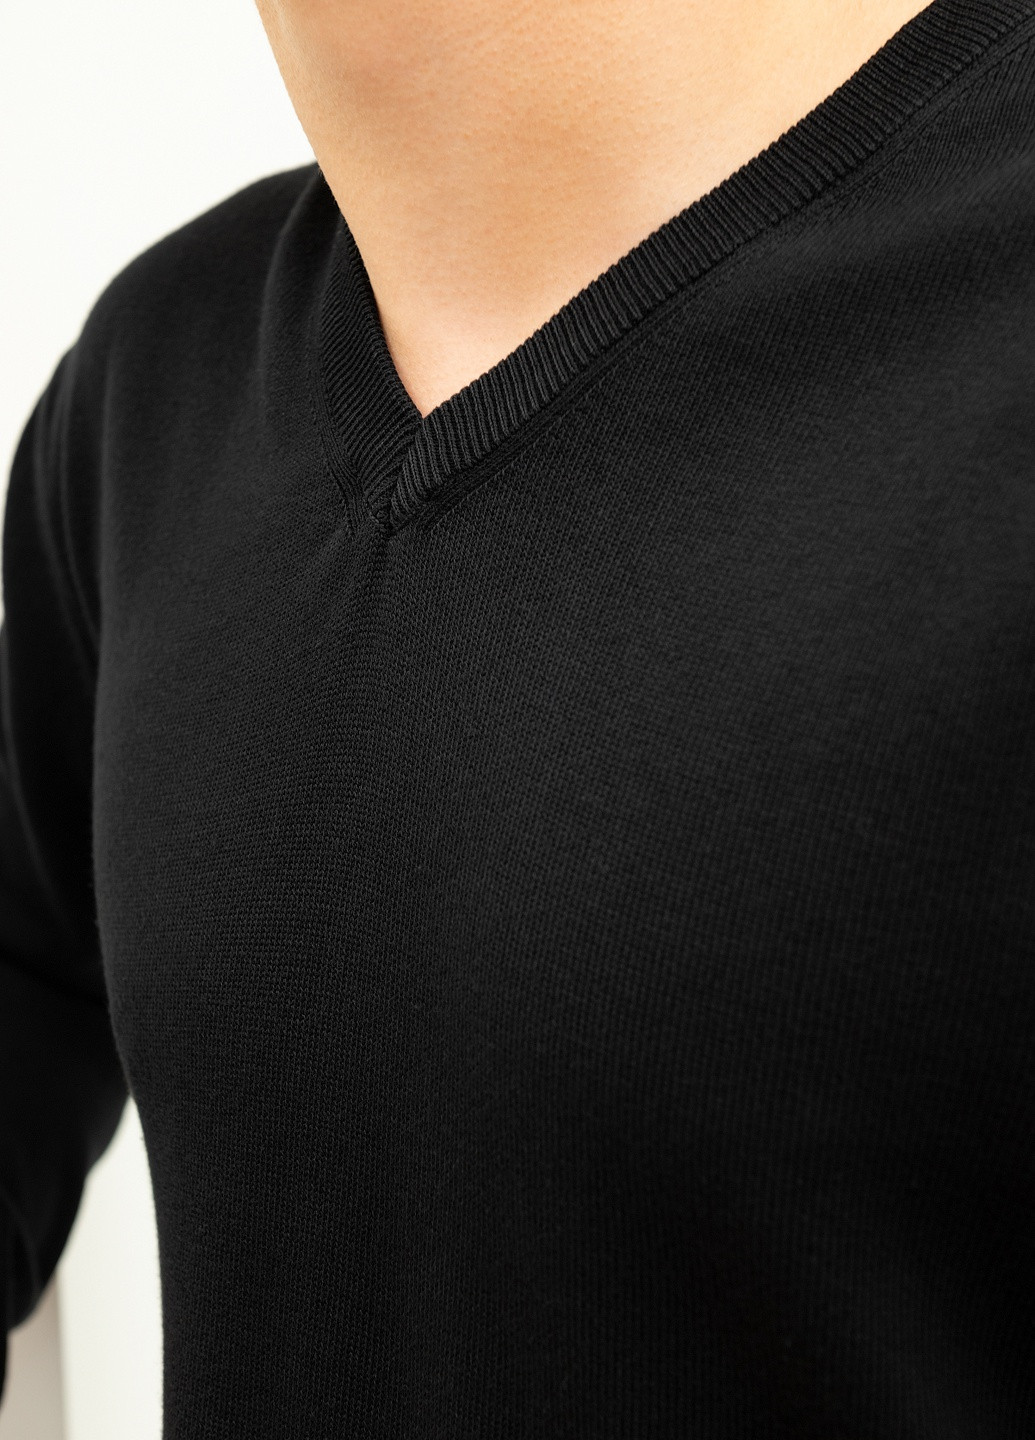 Черный демисезонный пуловер пуловер CLUB JU